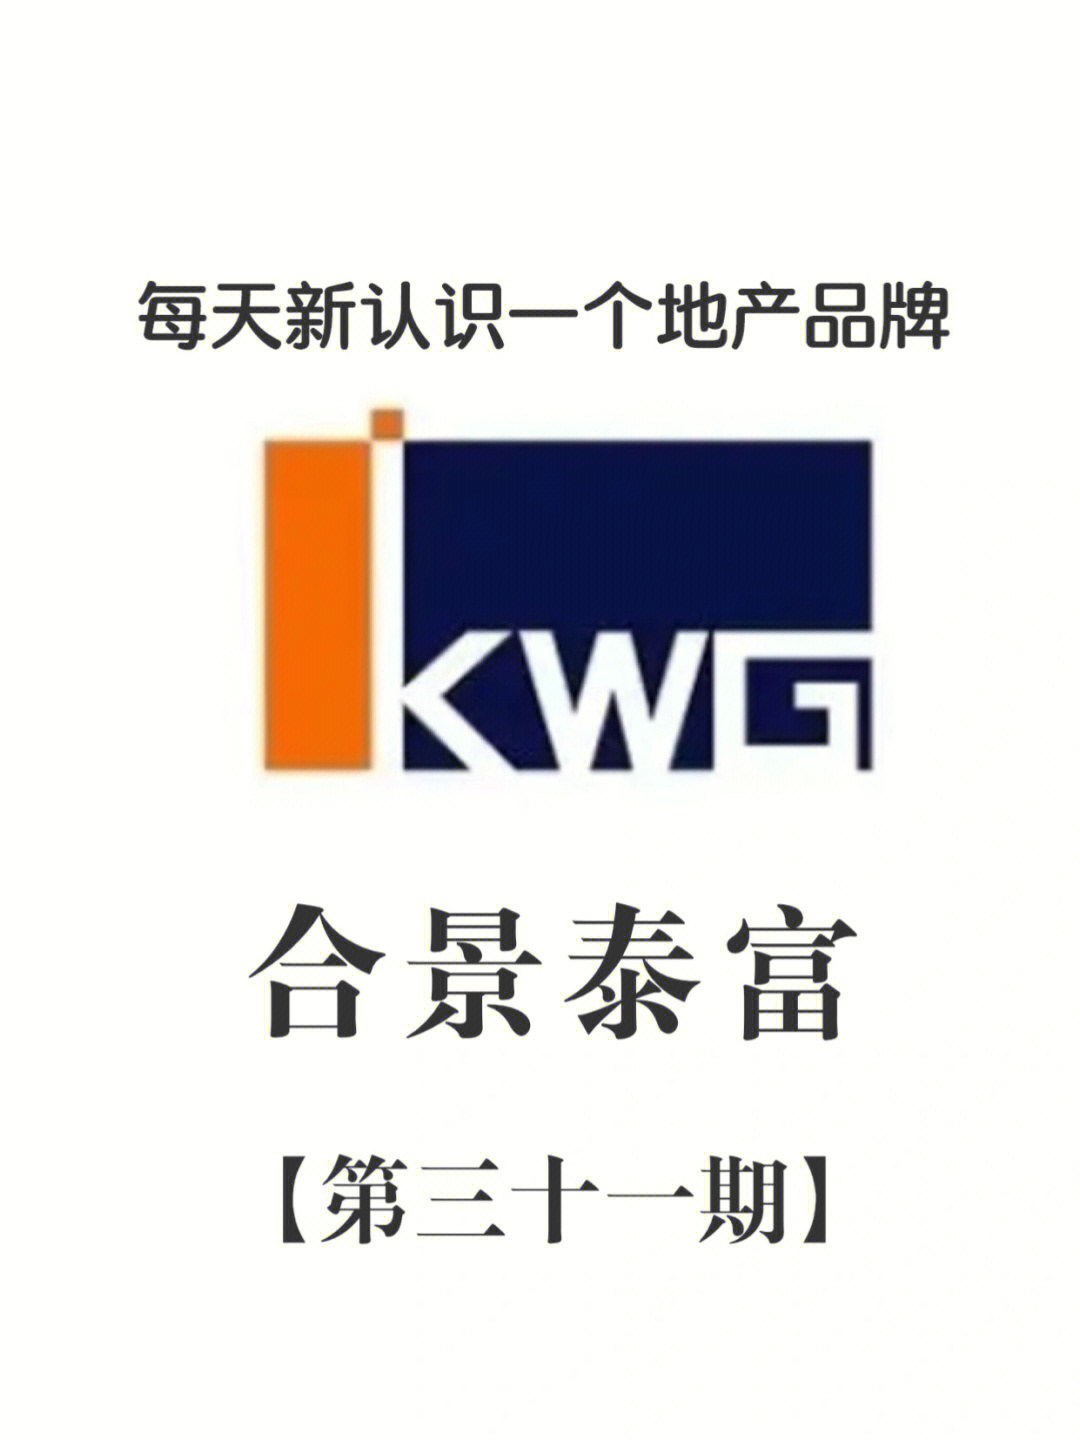 合景泰富地产logo图片